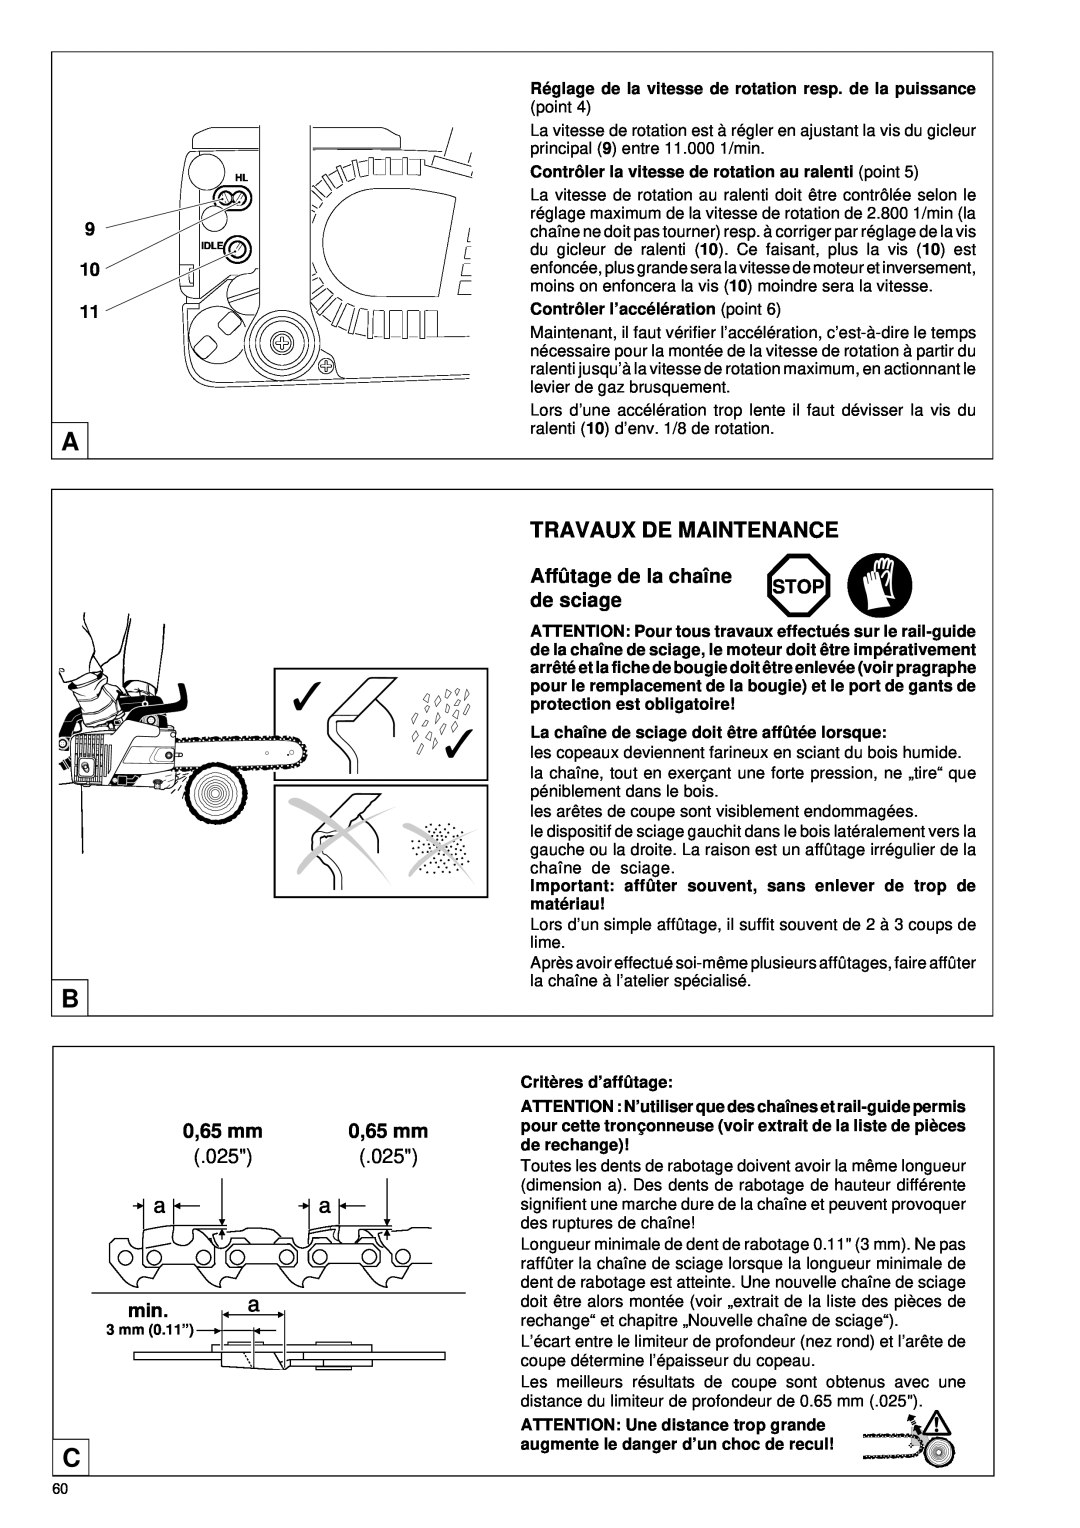 Makita DCS 330 TH instruction manual Travaux De Maintenance, Affû tage de la chaîne, de sciage, 0,65 mm 